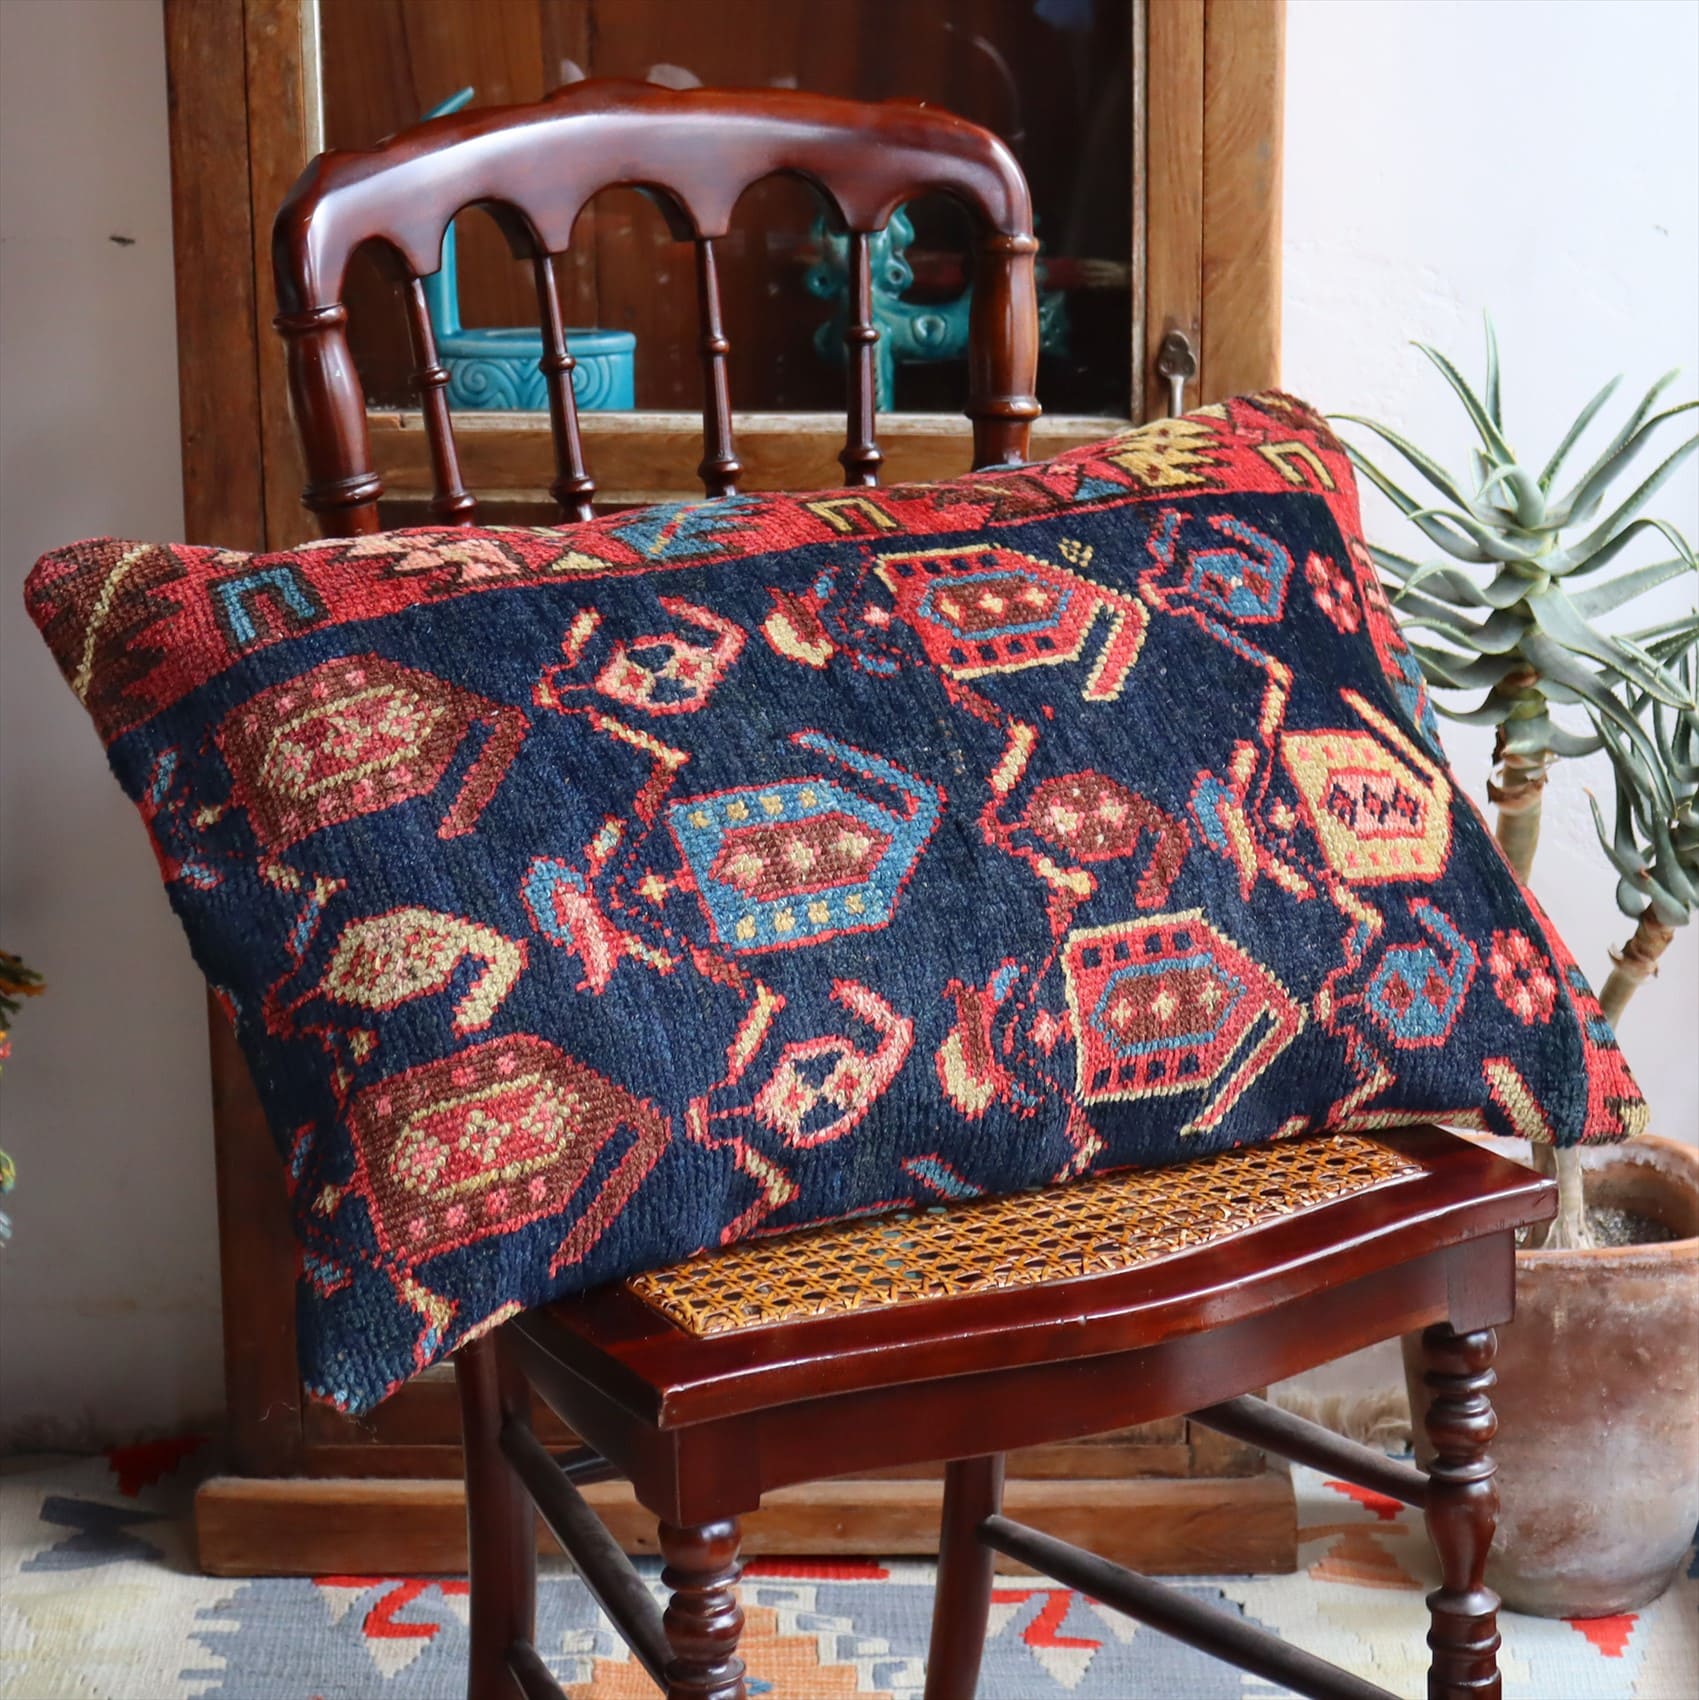 クッションカバー ヴィンテージ パイル織り 絨毯 ビッグピロー 横長 長方形 70×44cm シャーサバン ネイビー ペイズリー ボテ